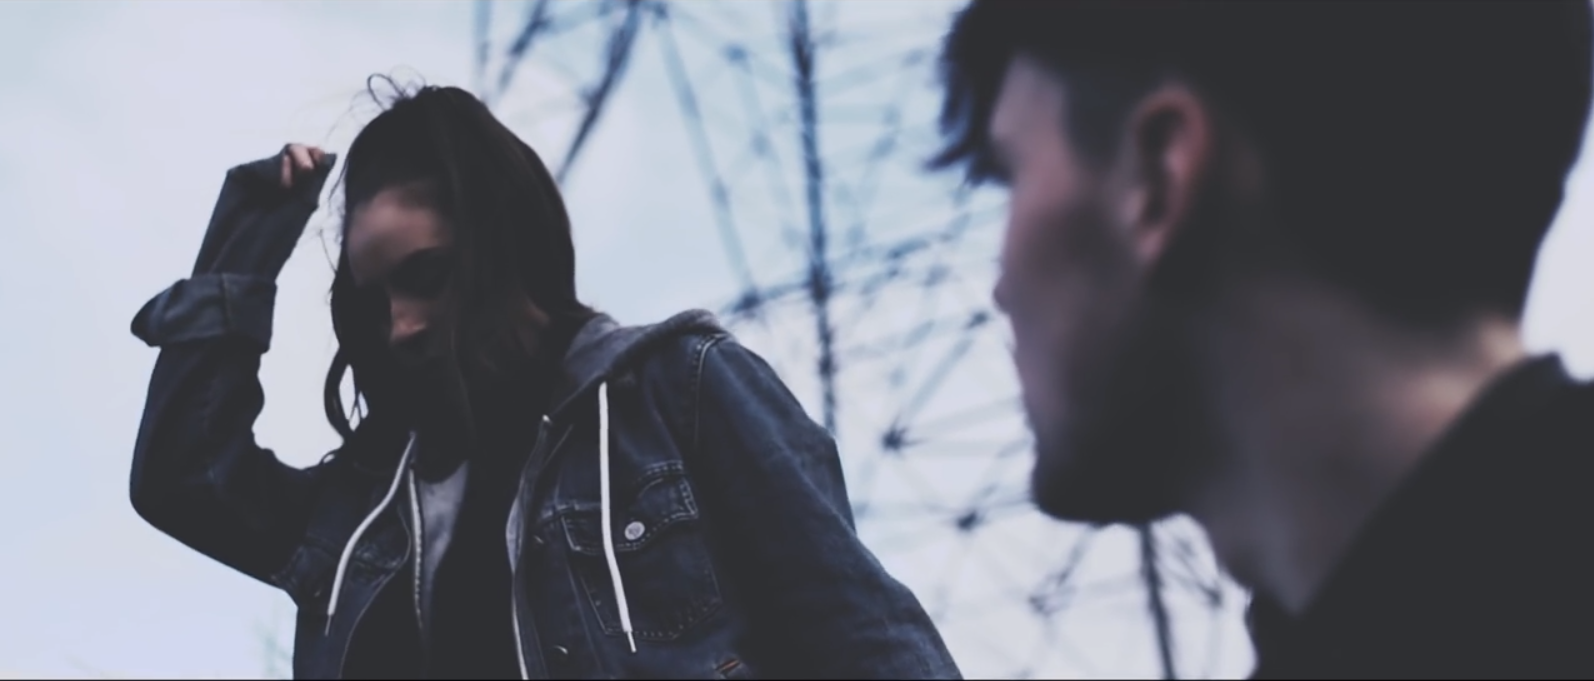 Screenshot from Cape Cub's "Closer" music video